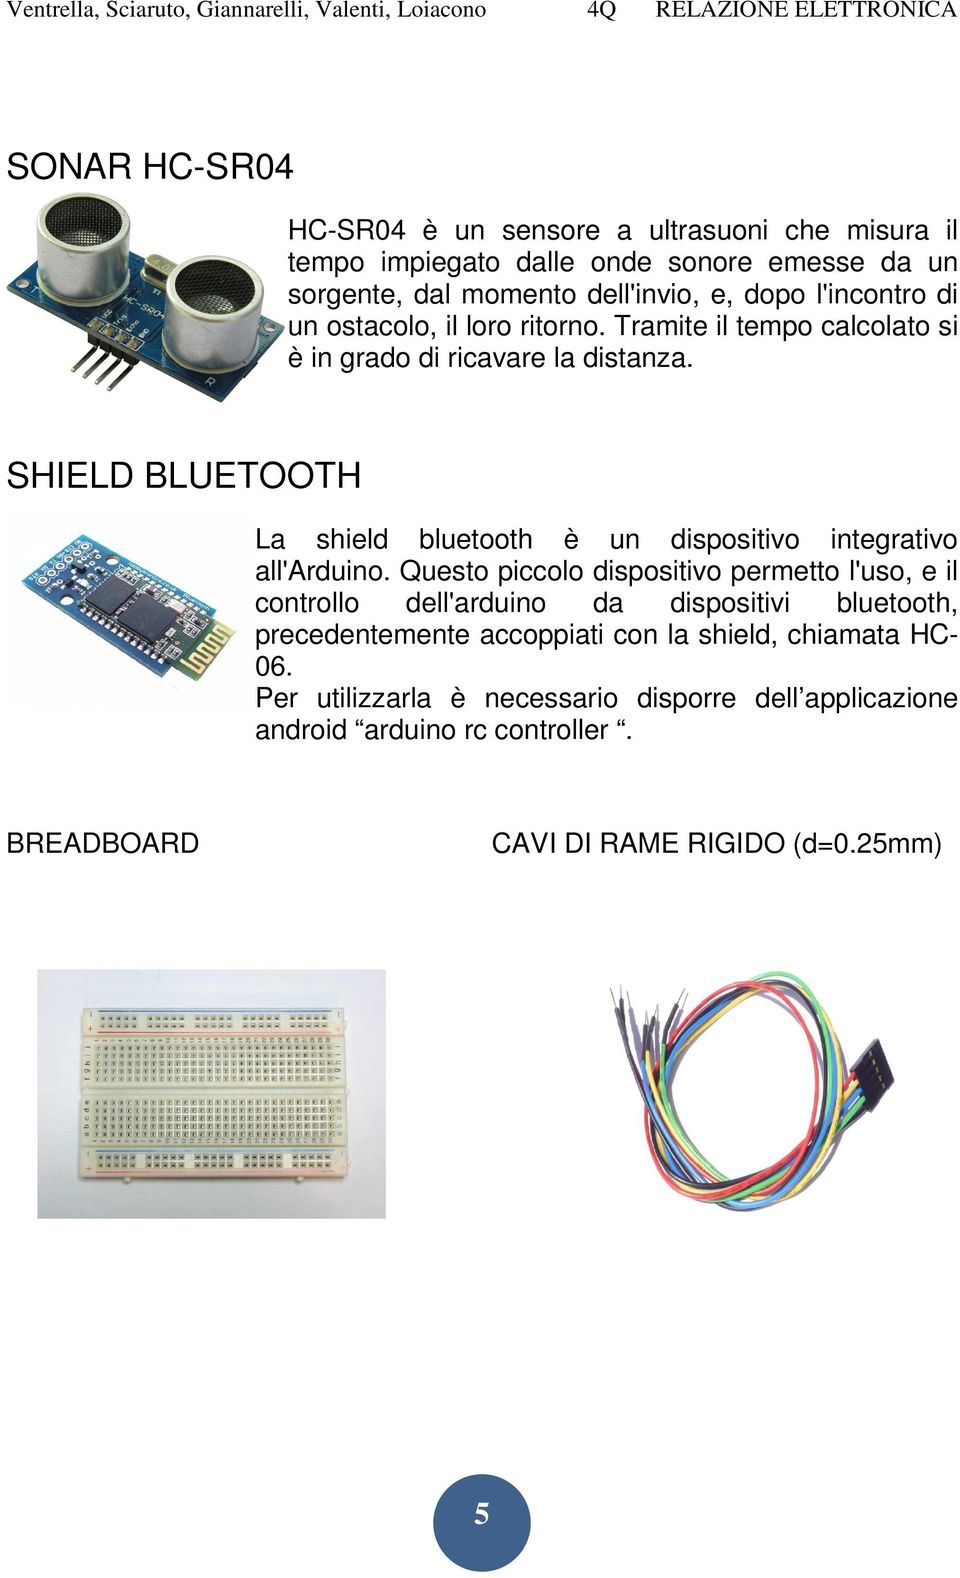 SHIELD BLUETOOTH La shield bluetooth è un dispositivo integrativo all'arduino.